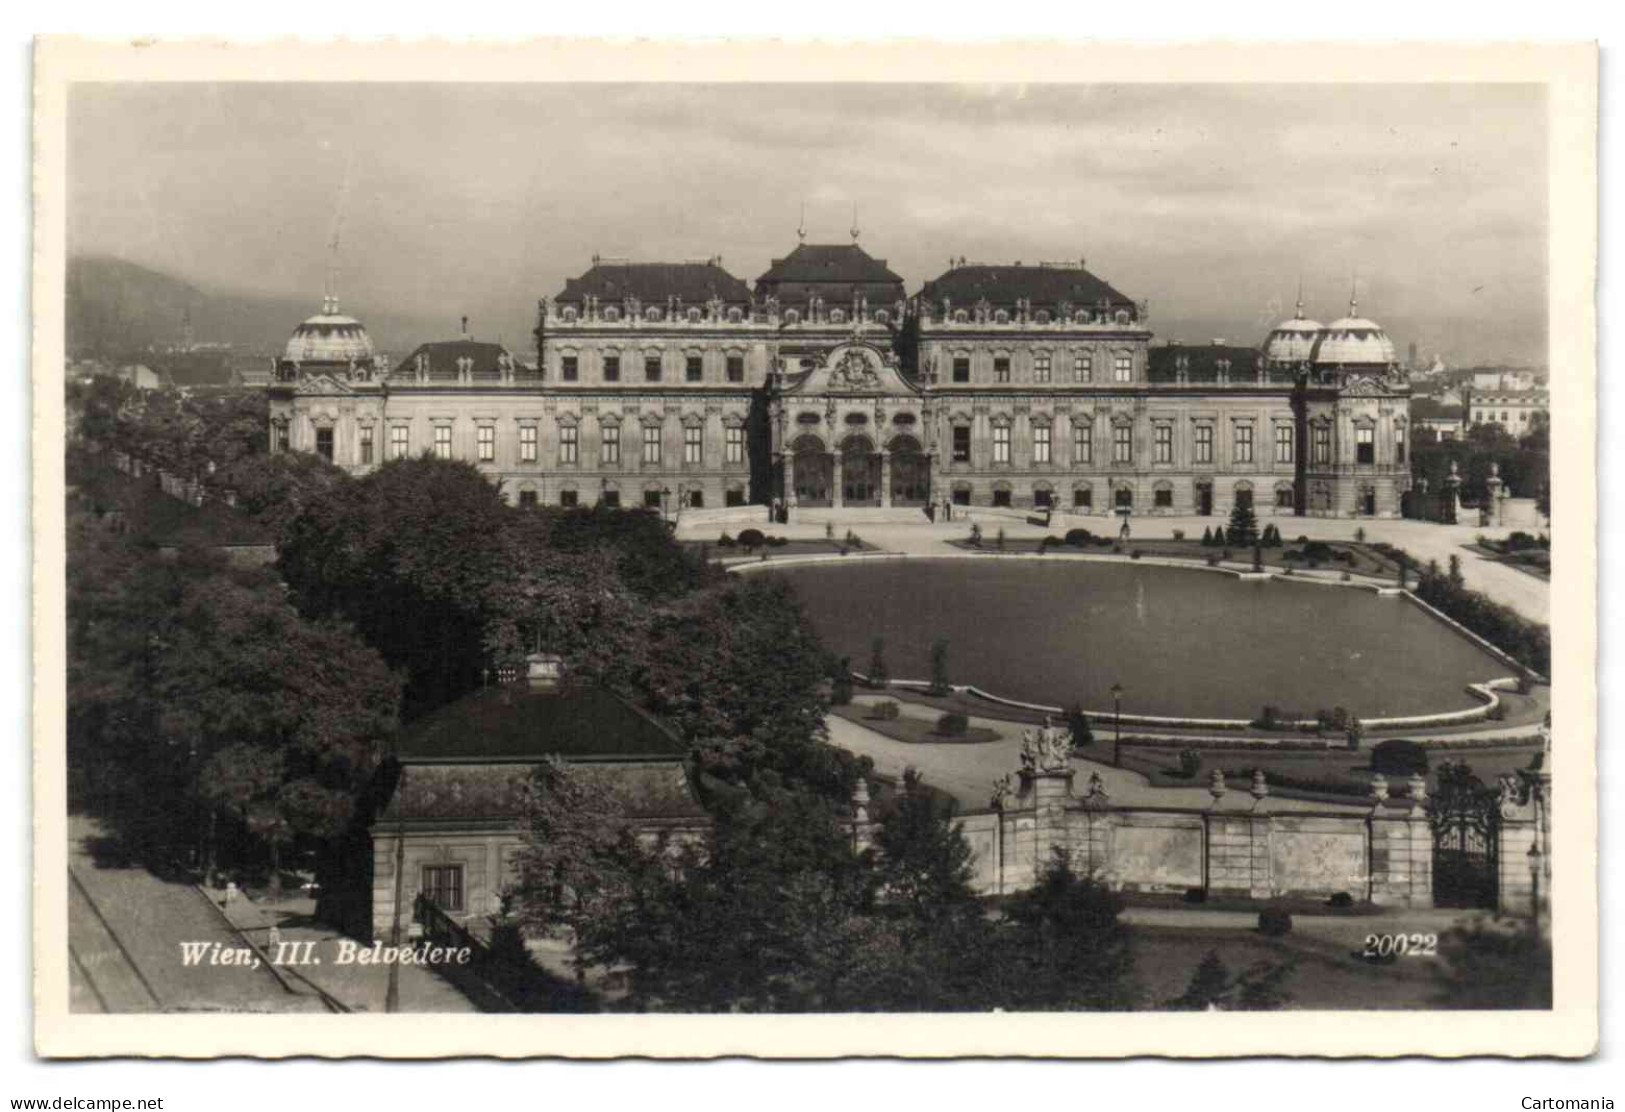 Wien , III Belvedere - Belvédère